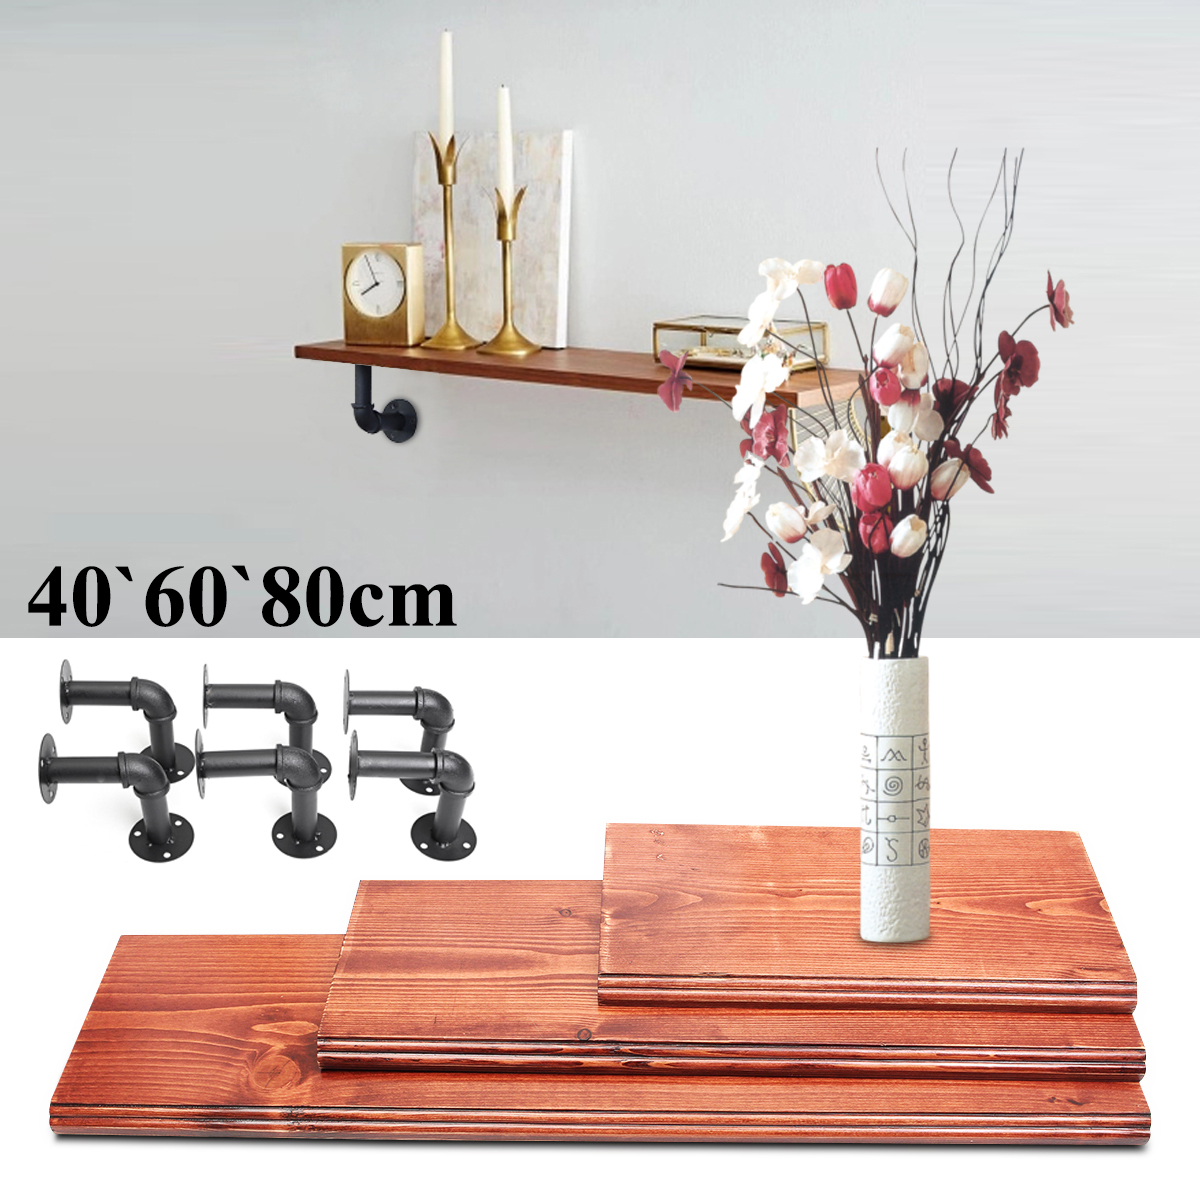 3Pcs-406080cm-Wooden-Board-Shelves-Wall-Mount-Floating-Shelf-Display-Bracket-Waterproof-Decor-1390599-2